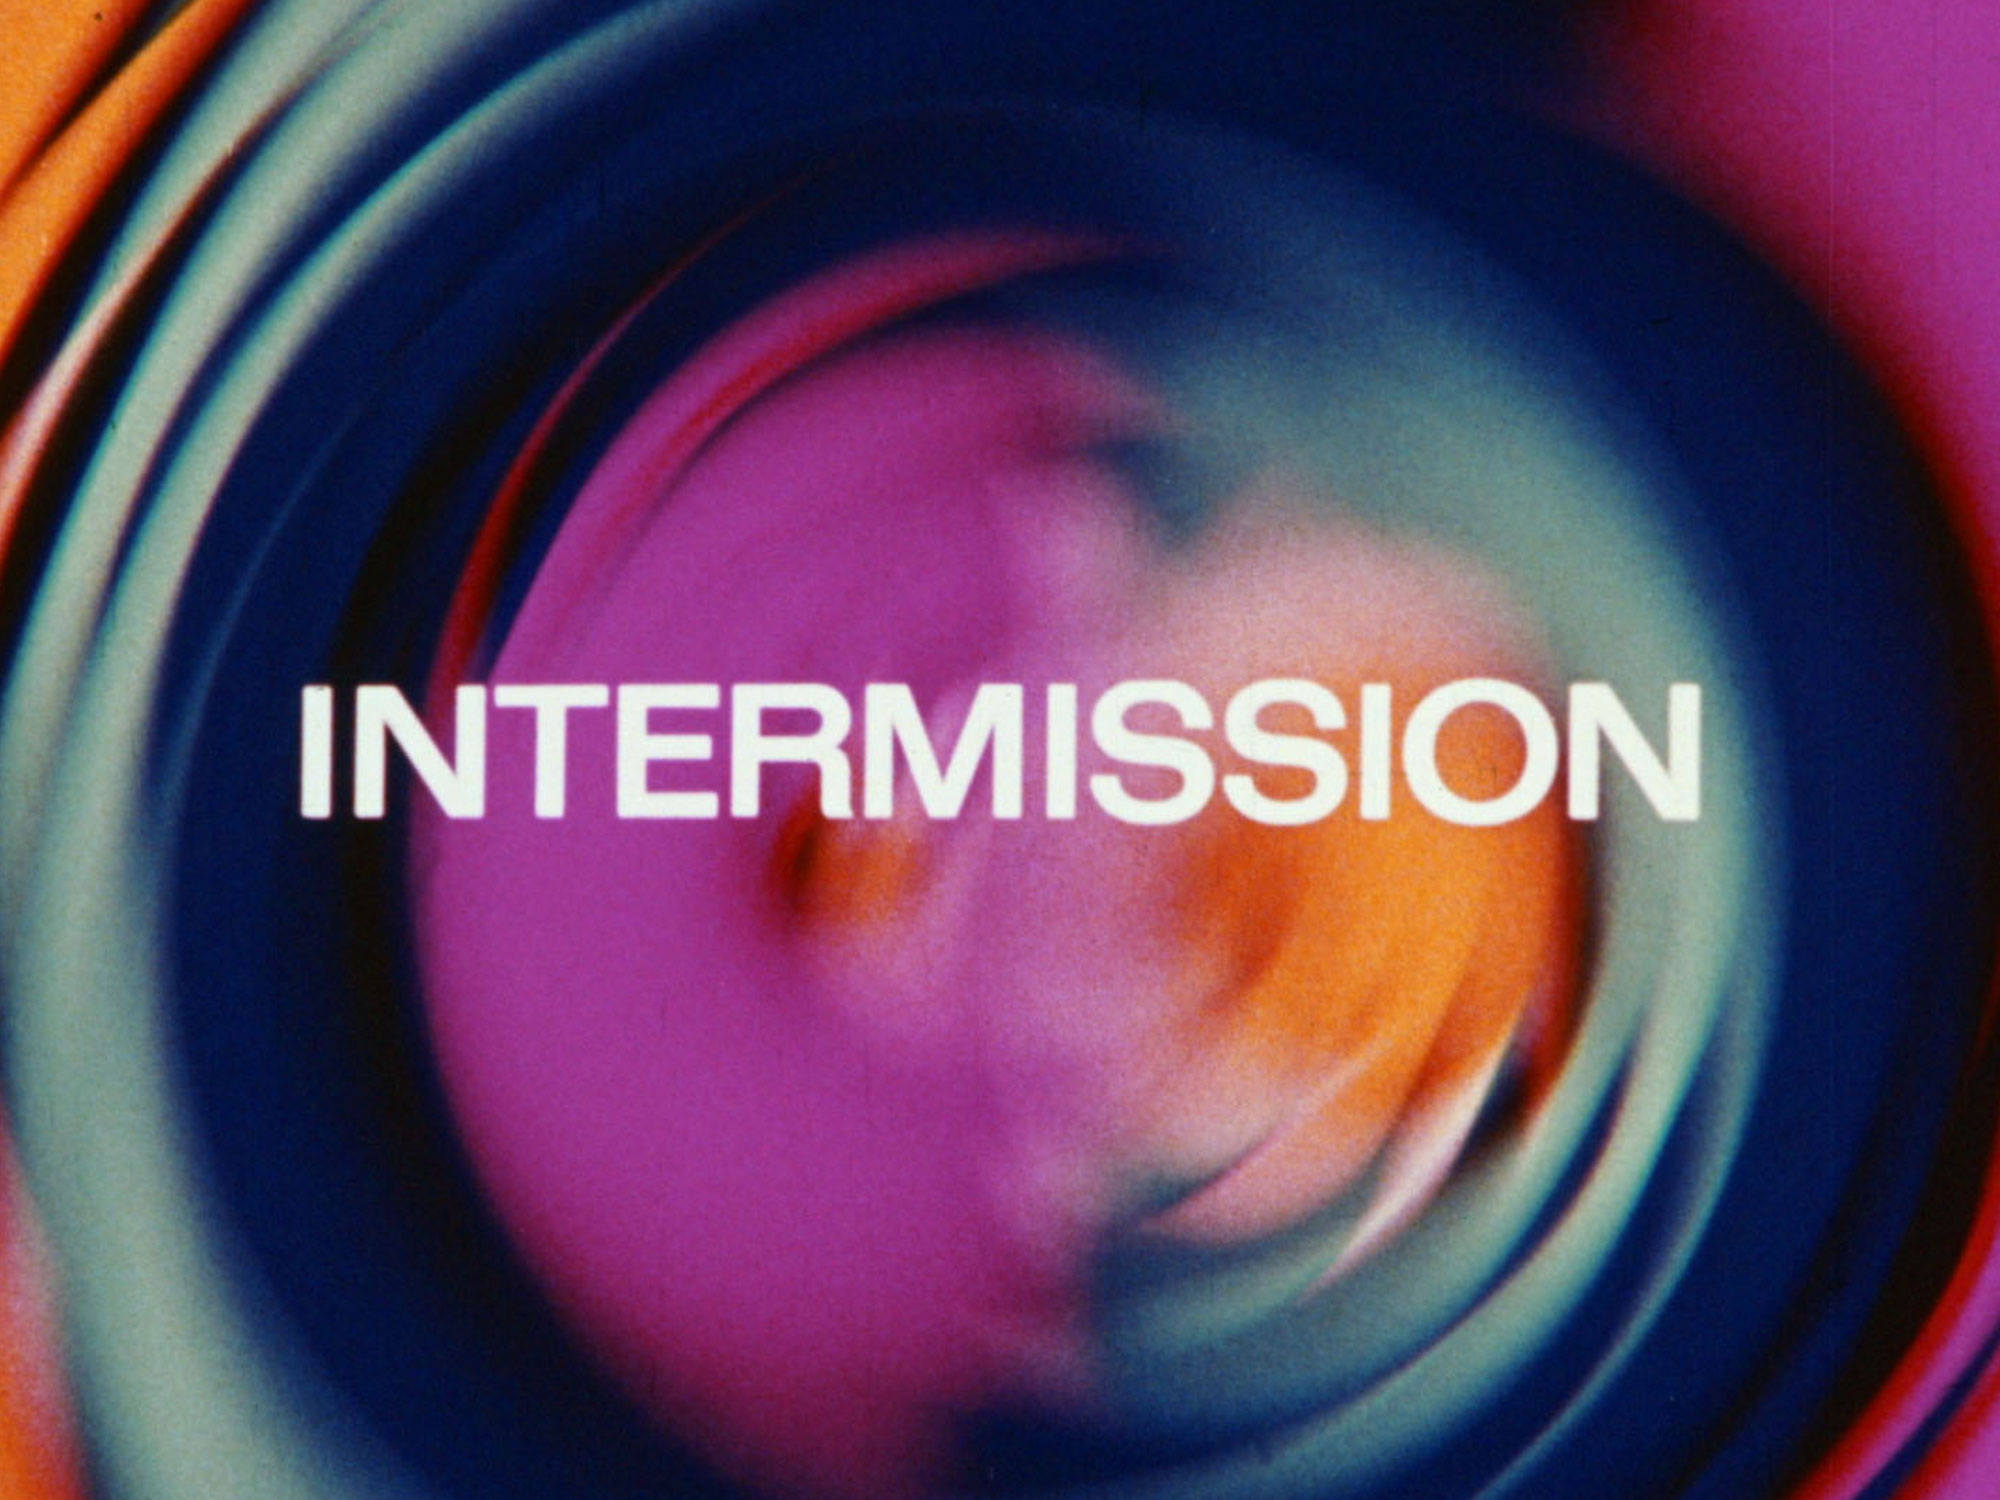 intermission stream